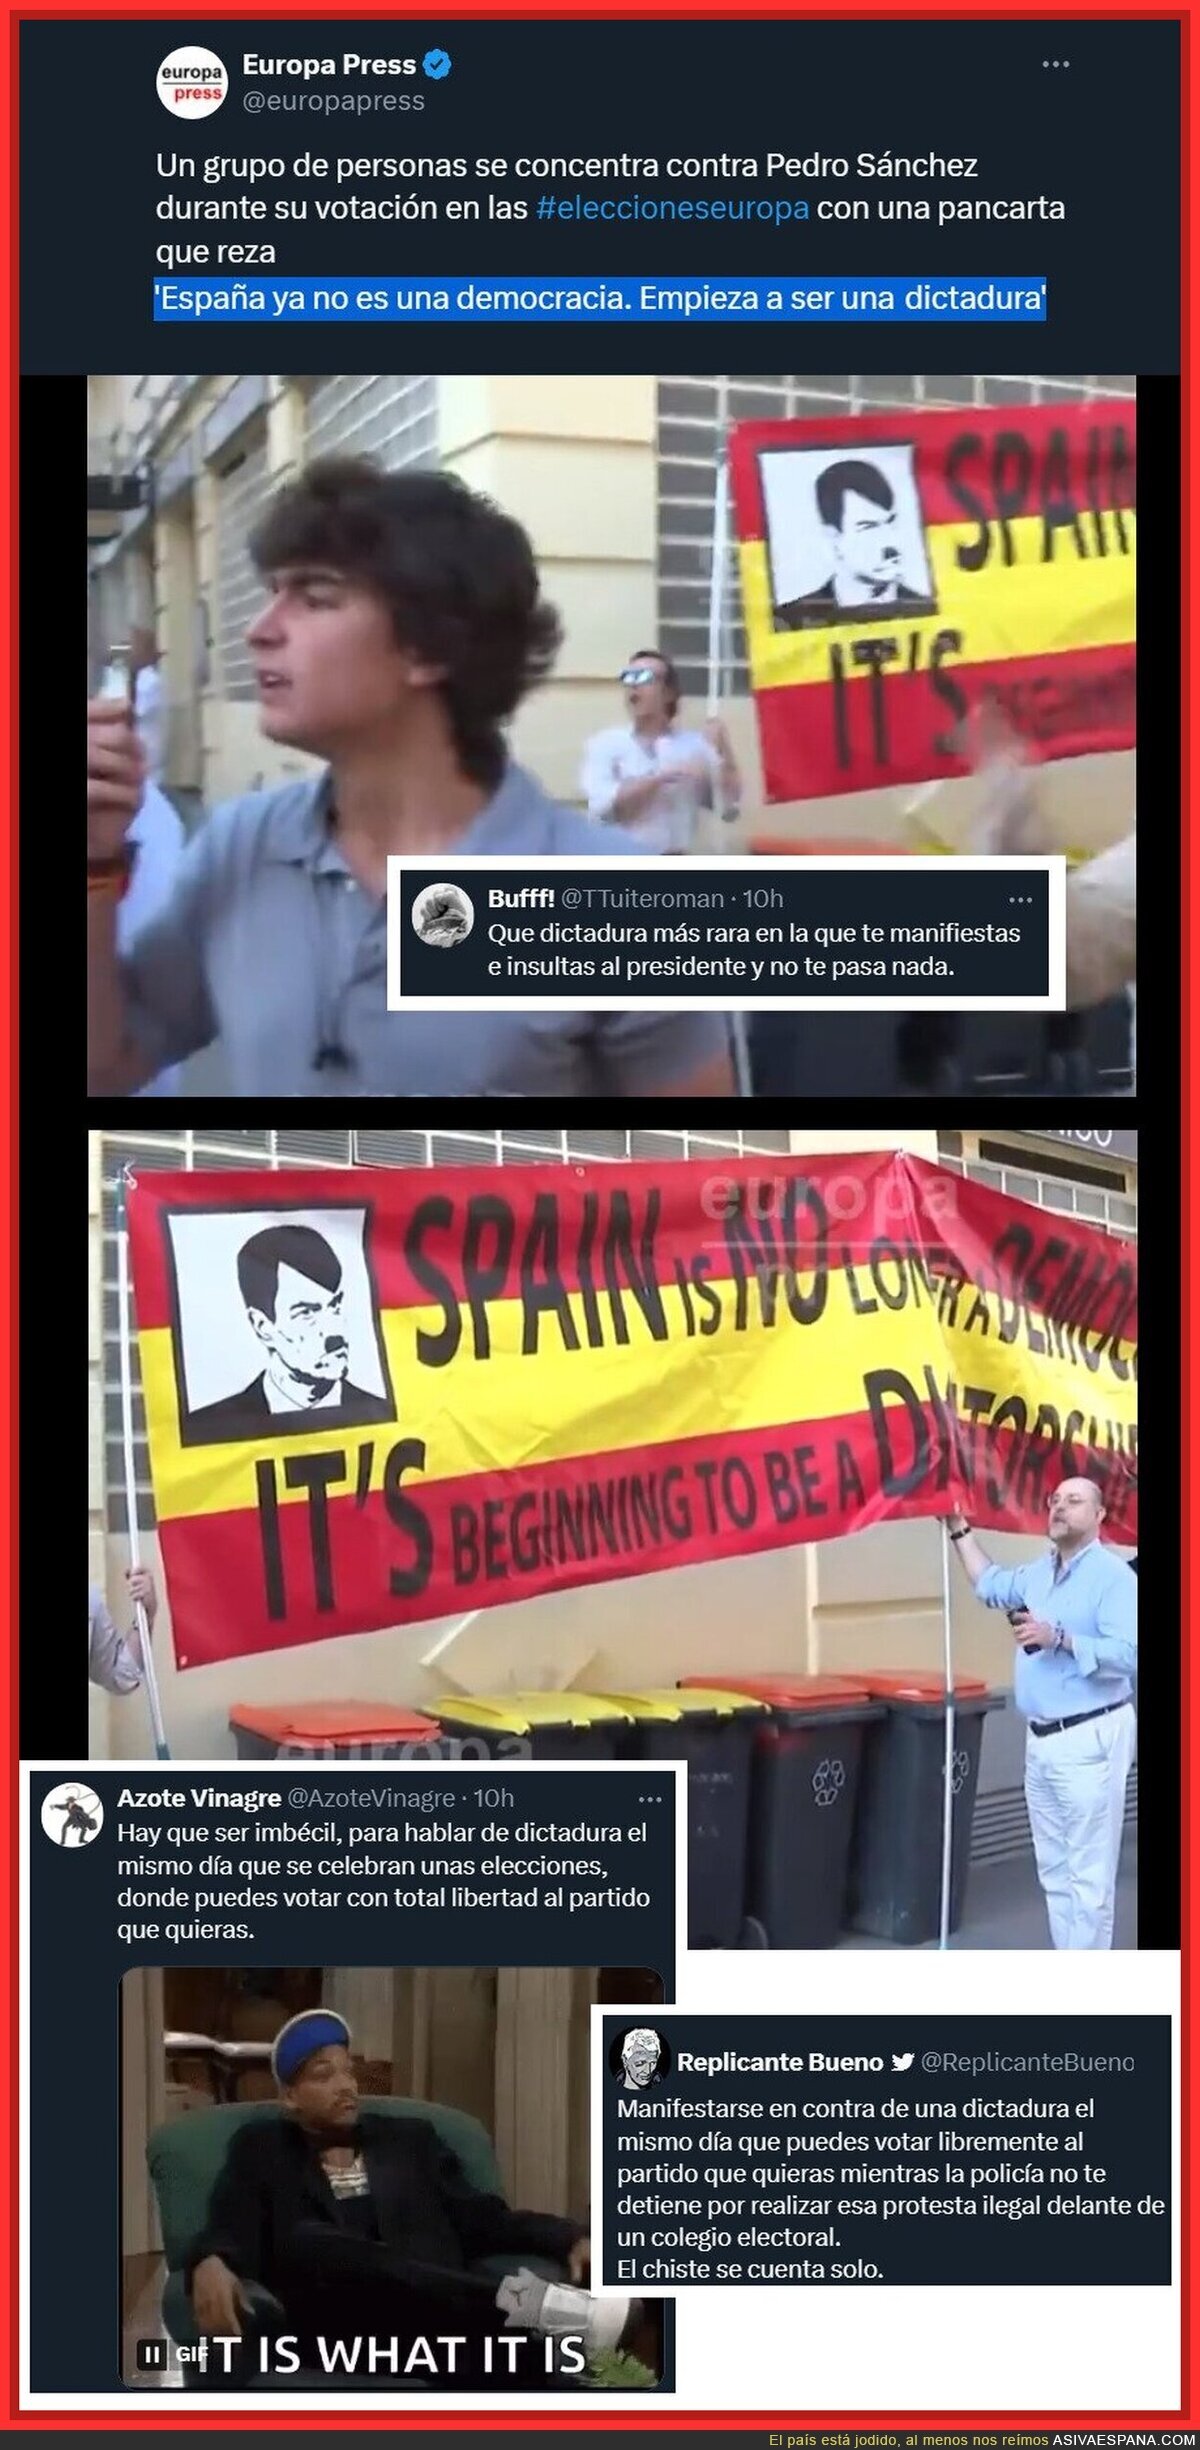 La cayetanía en pleno dia de elecciones: "ESPAÑA ES UNA DICTADURA"